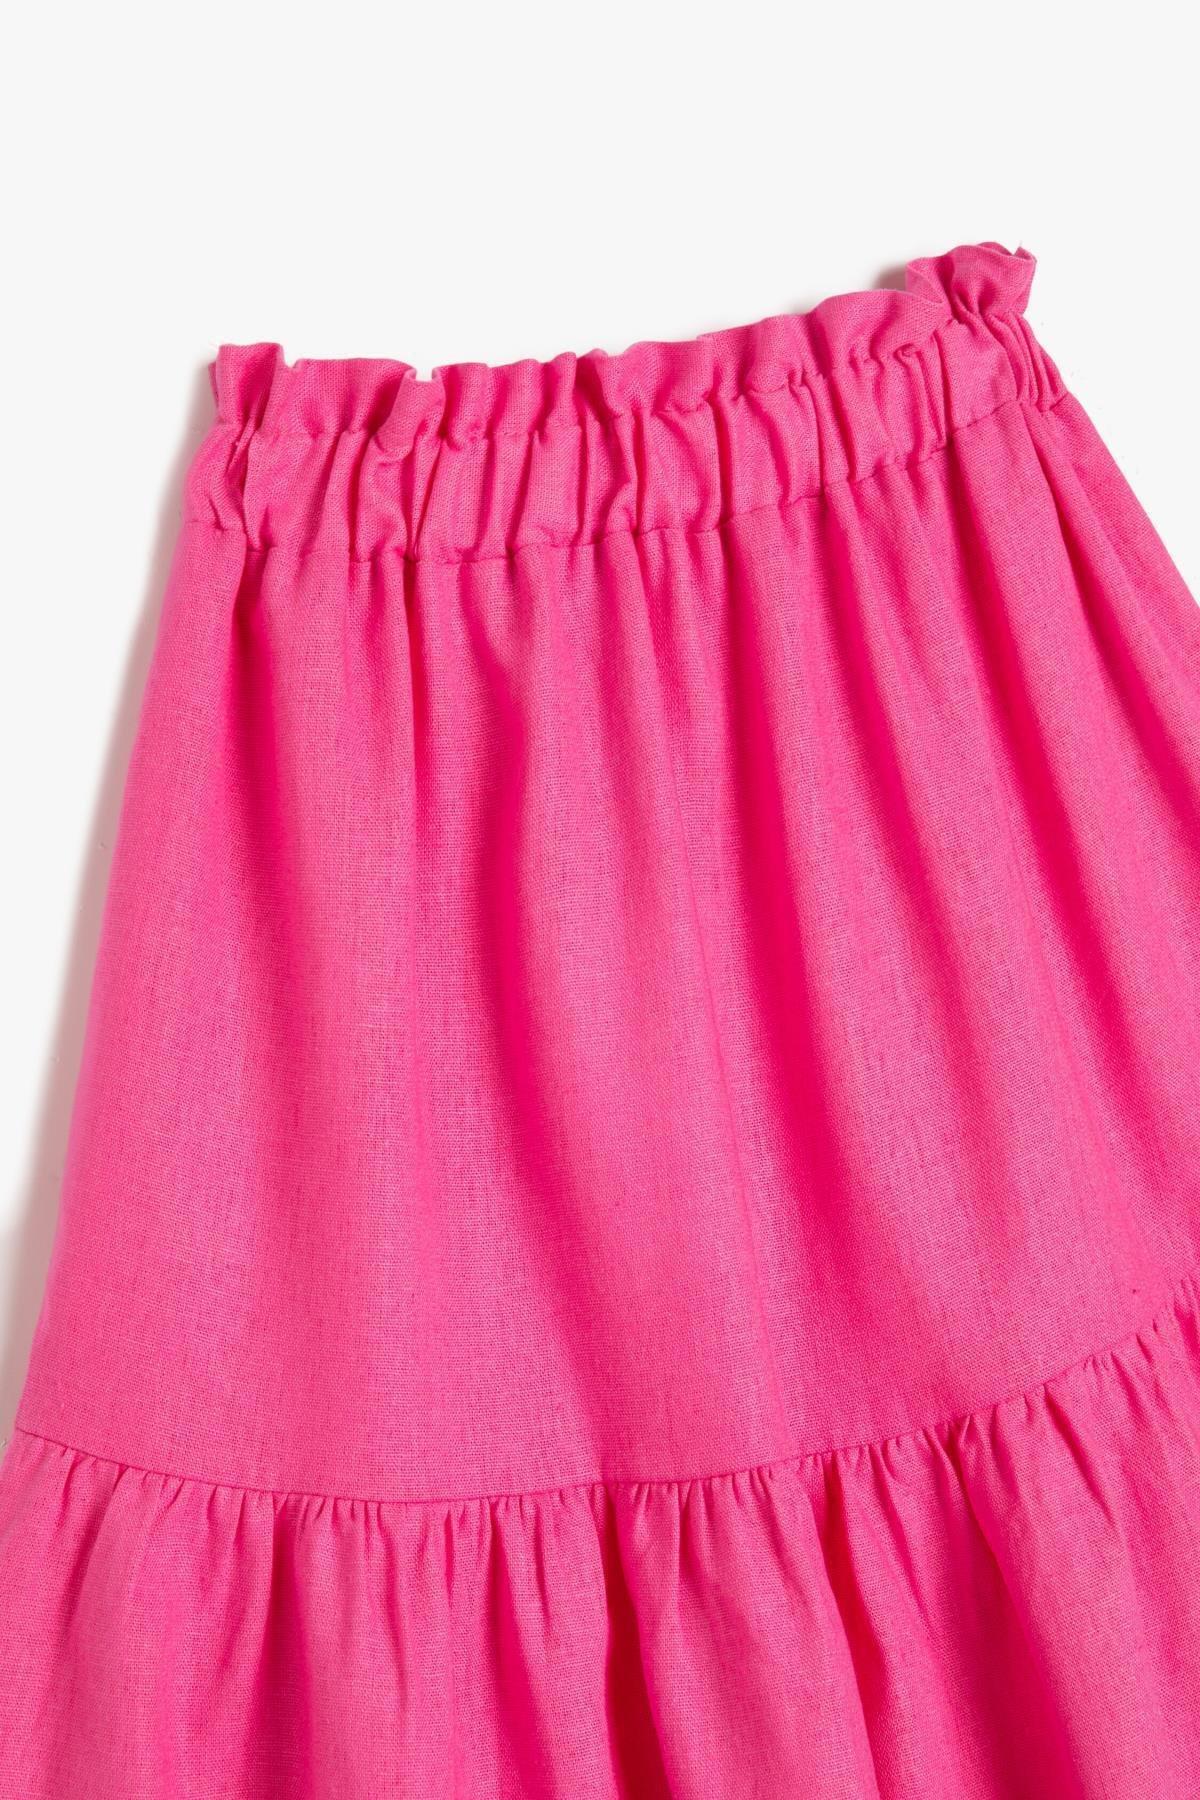 Koton - Pink Midi Layered Skirt, Kids Girls